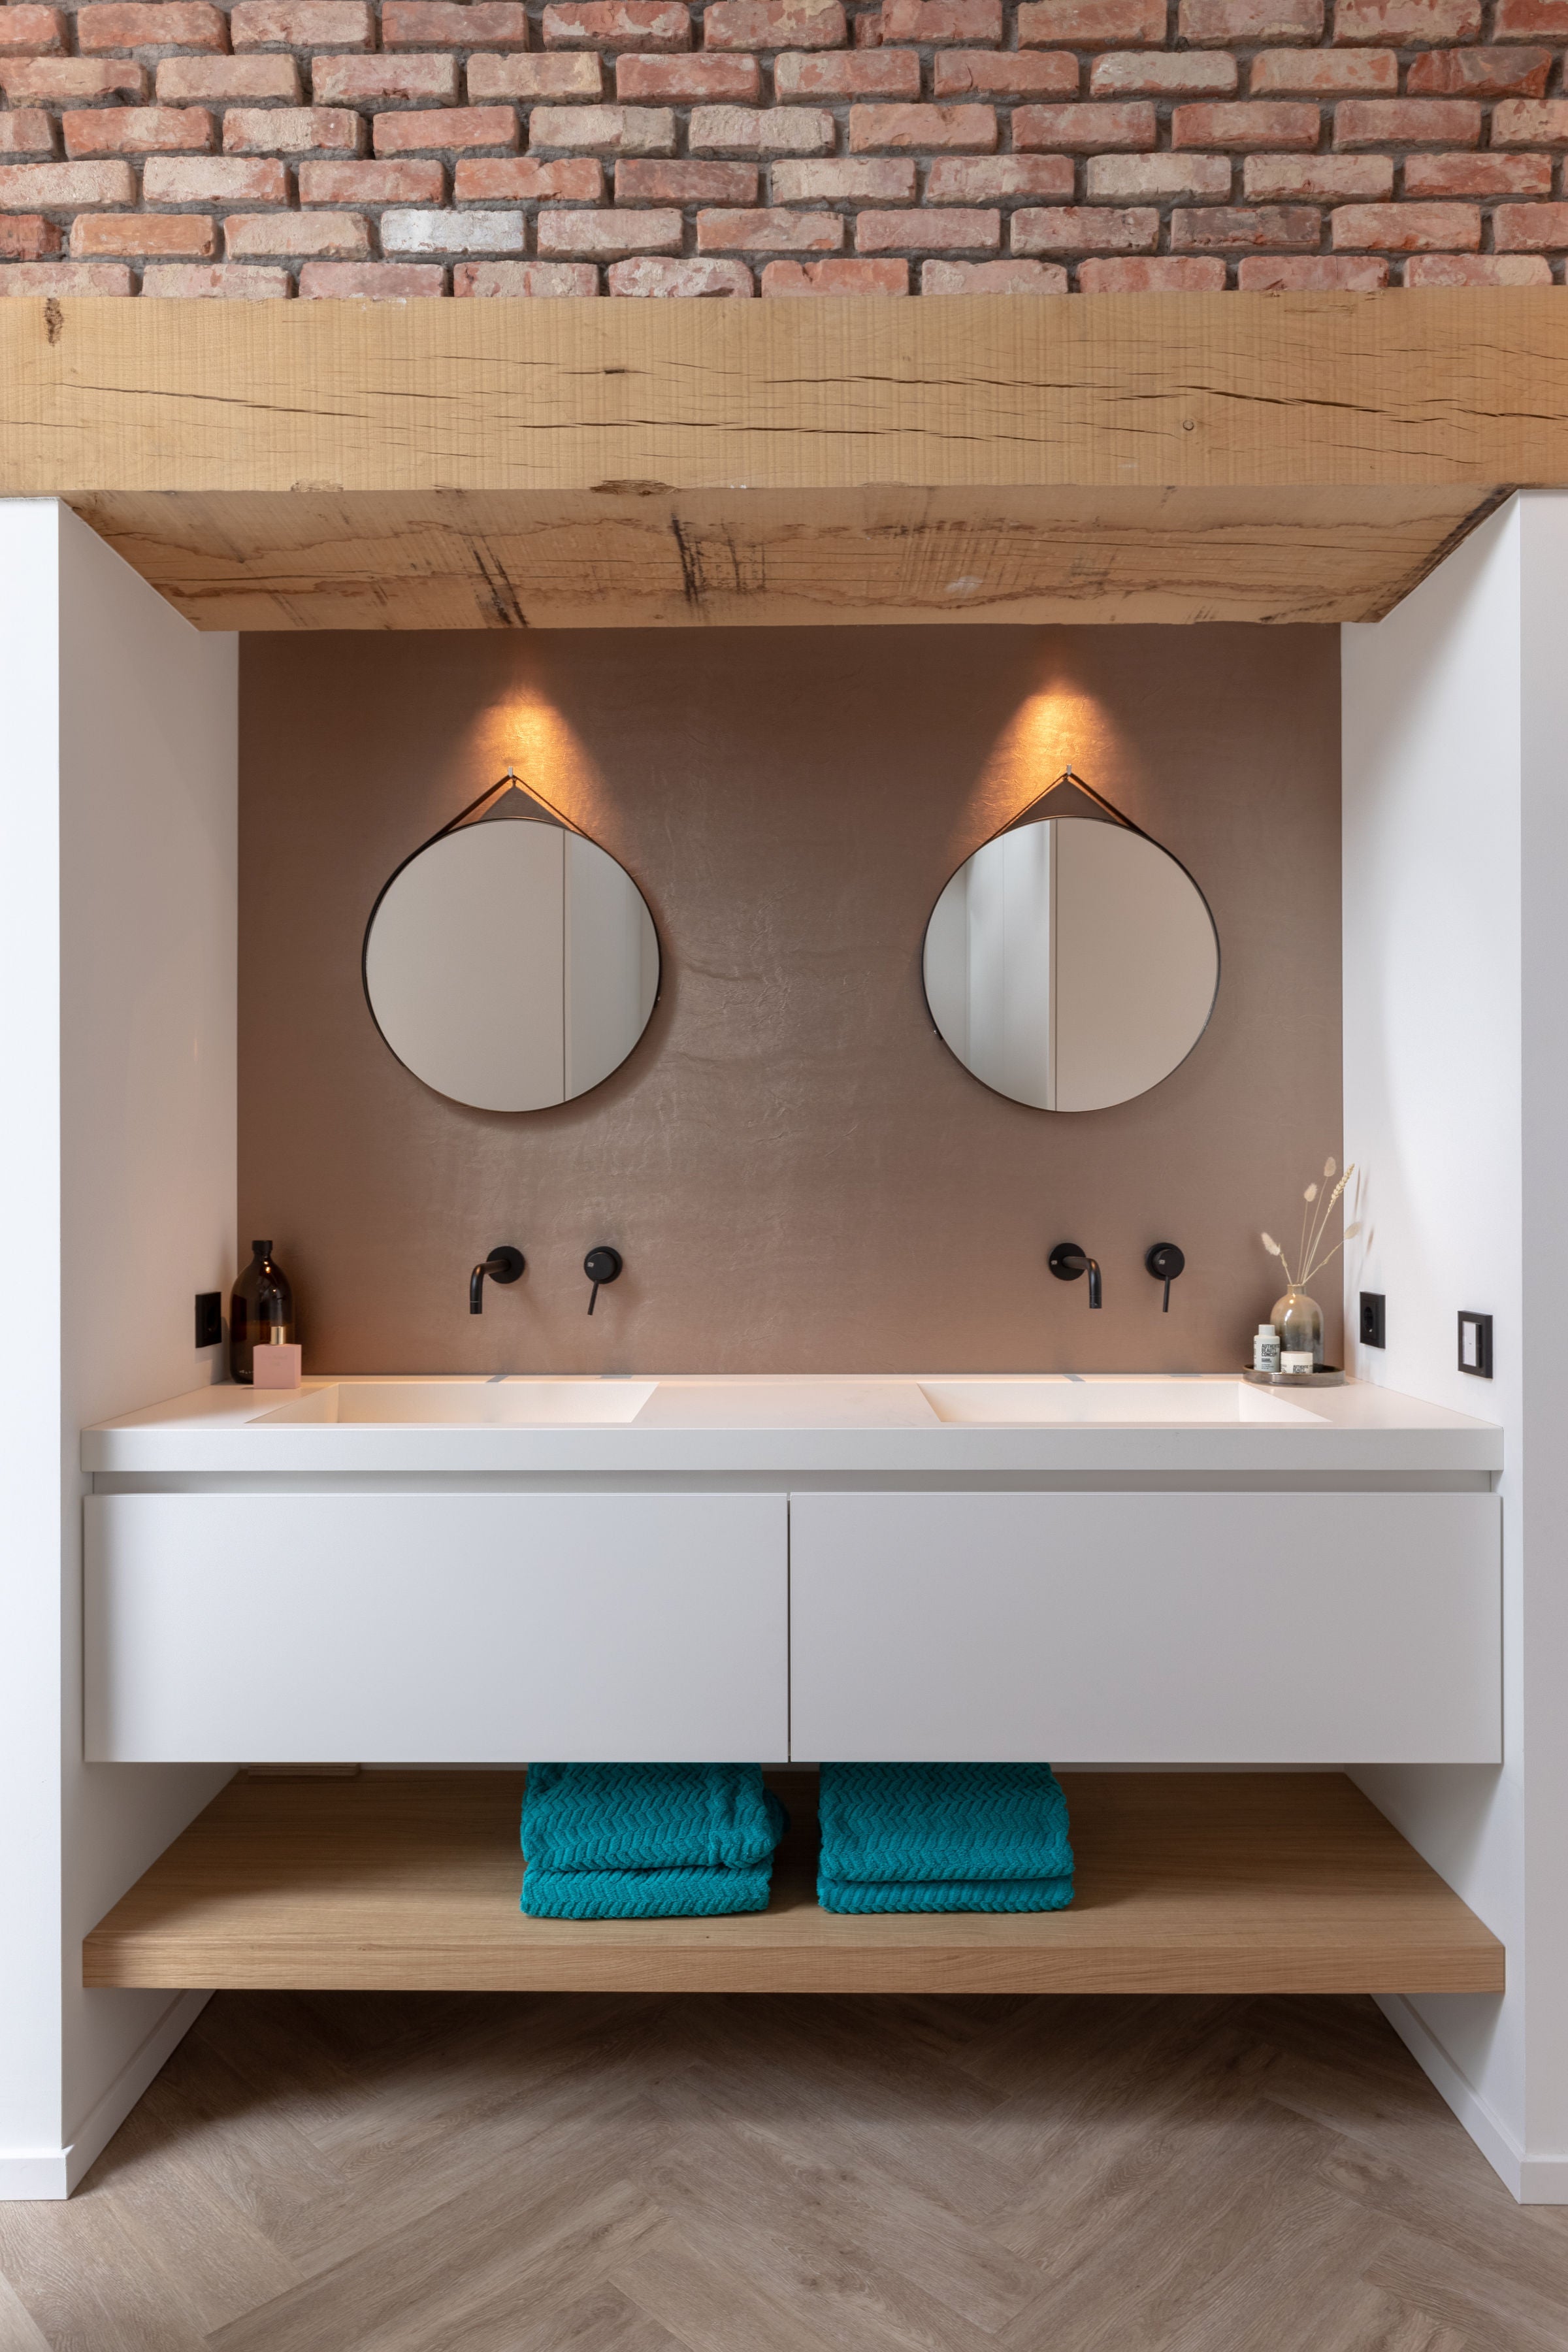 Querkus - Querkus adagio - Bathroom wood floor - veneer - veneer floor - ready-to-use veneer - oak floor